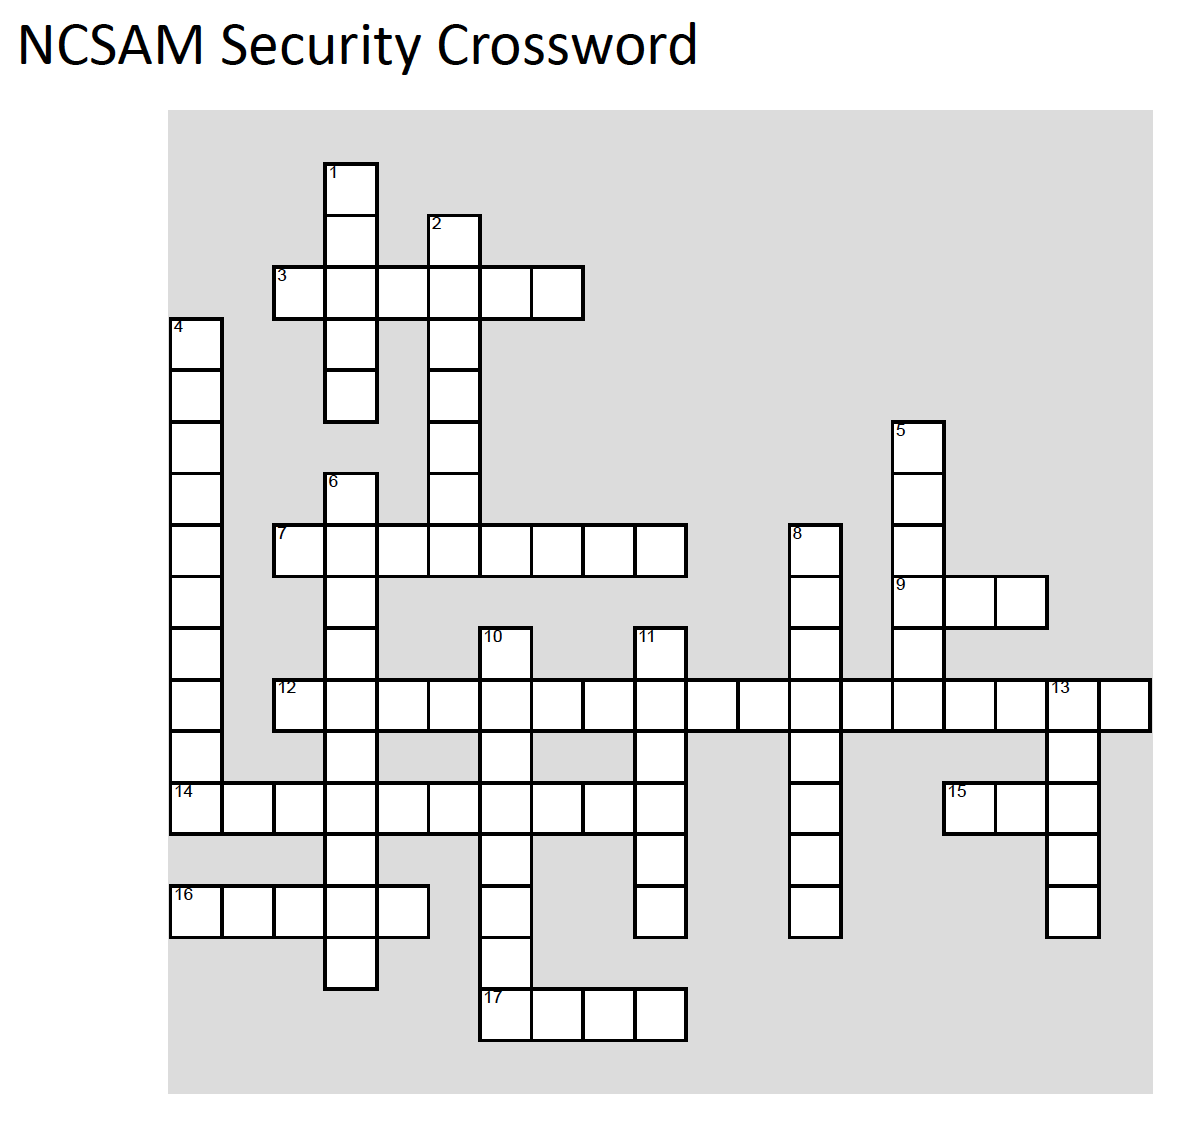 NCSAM Crossword Puzzle